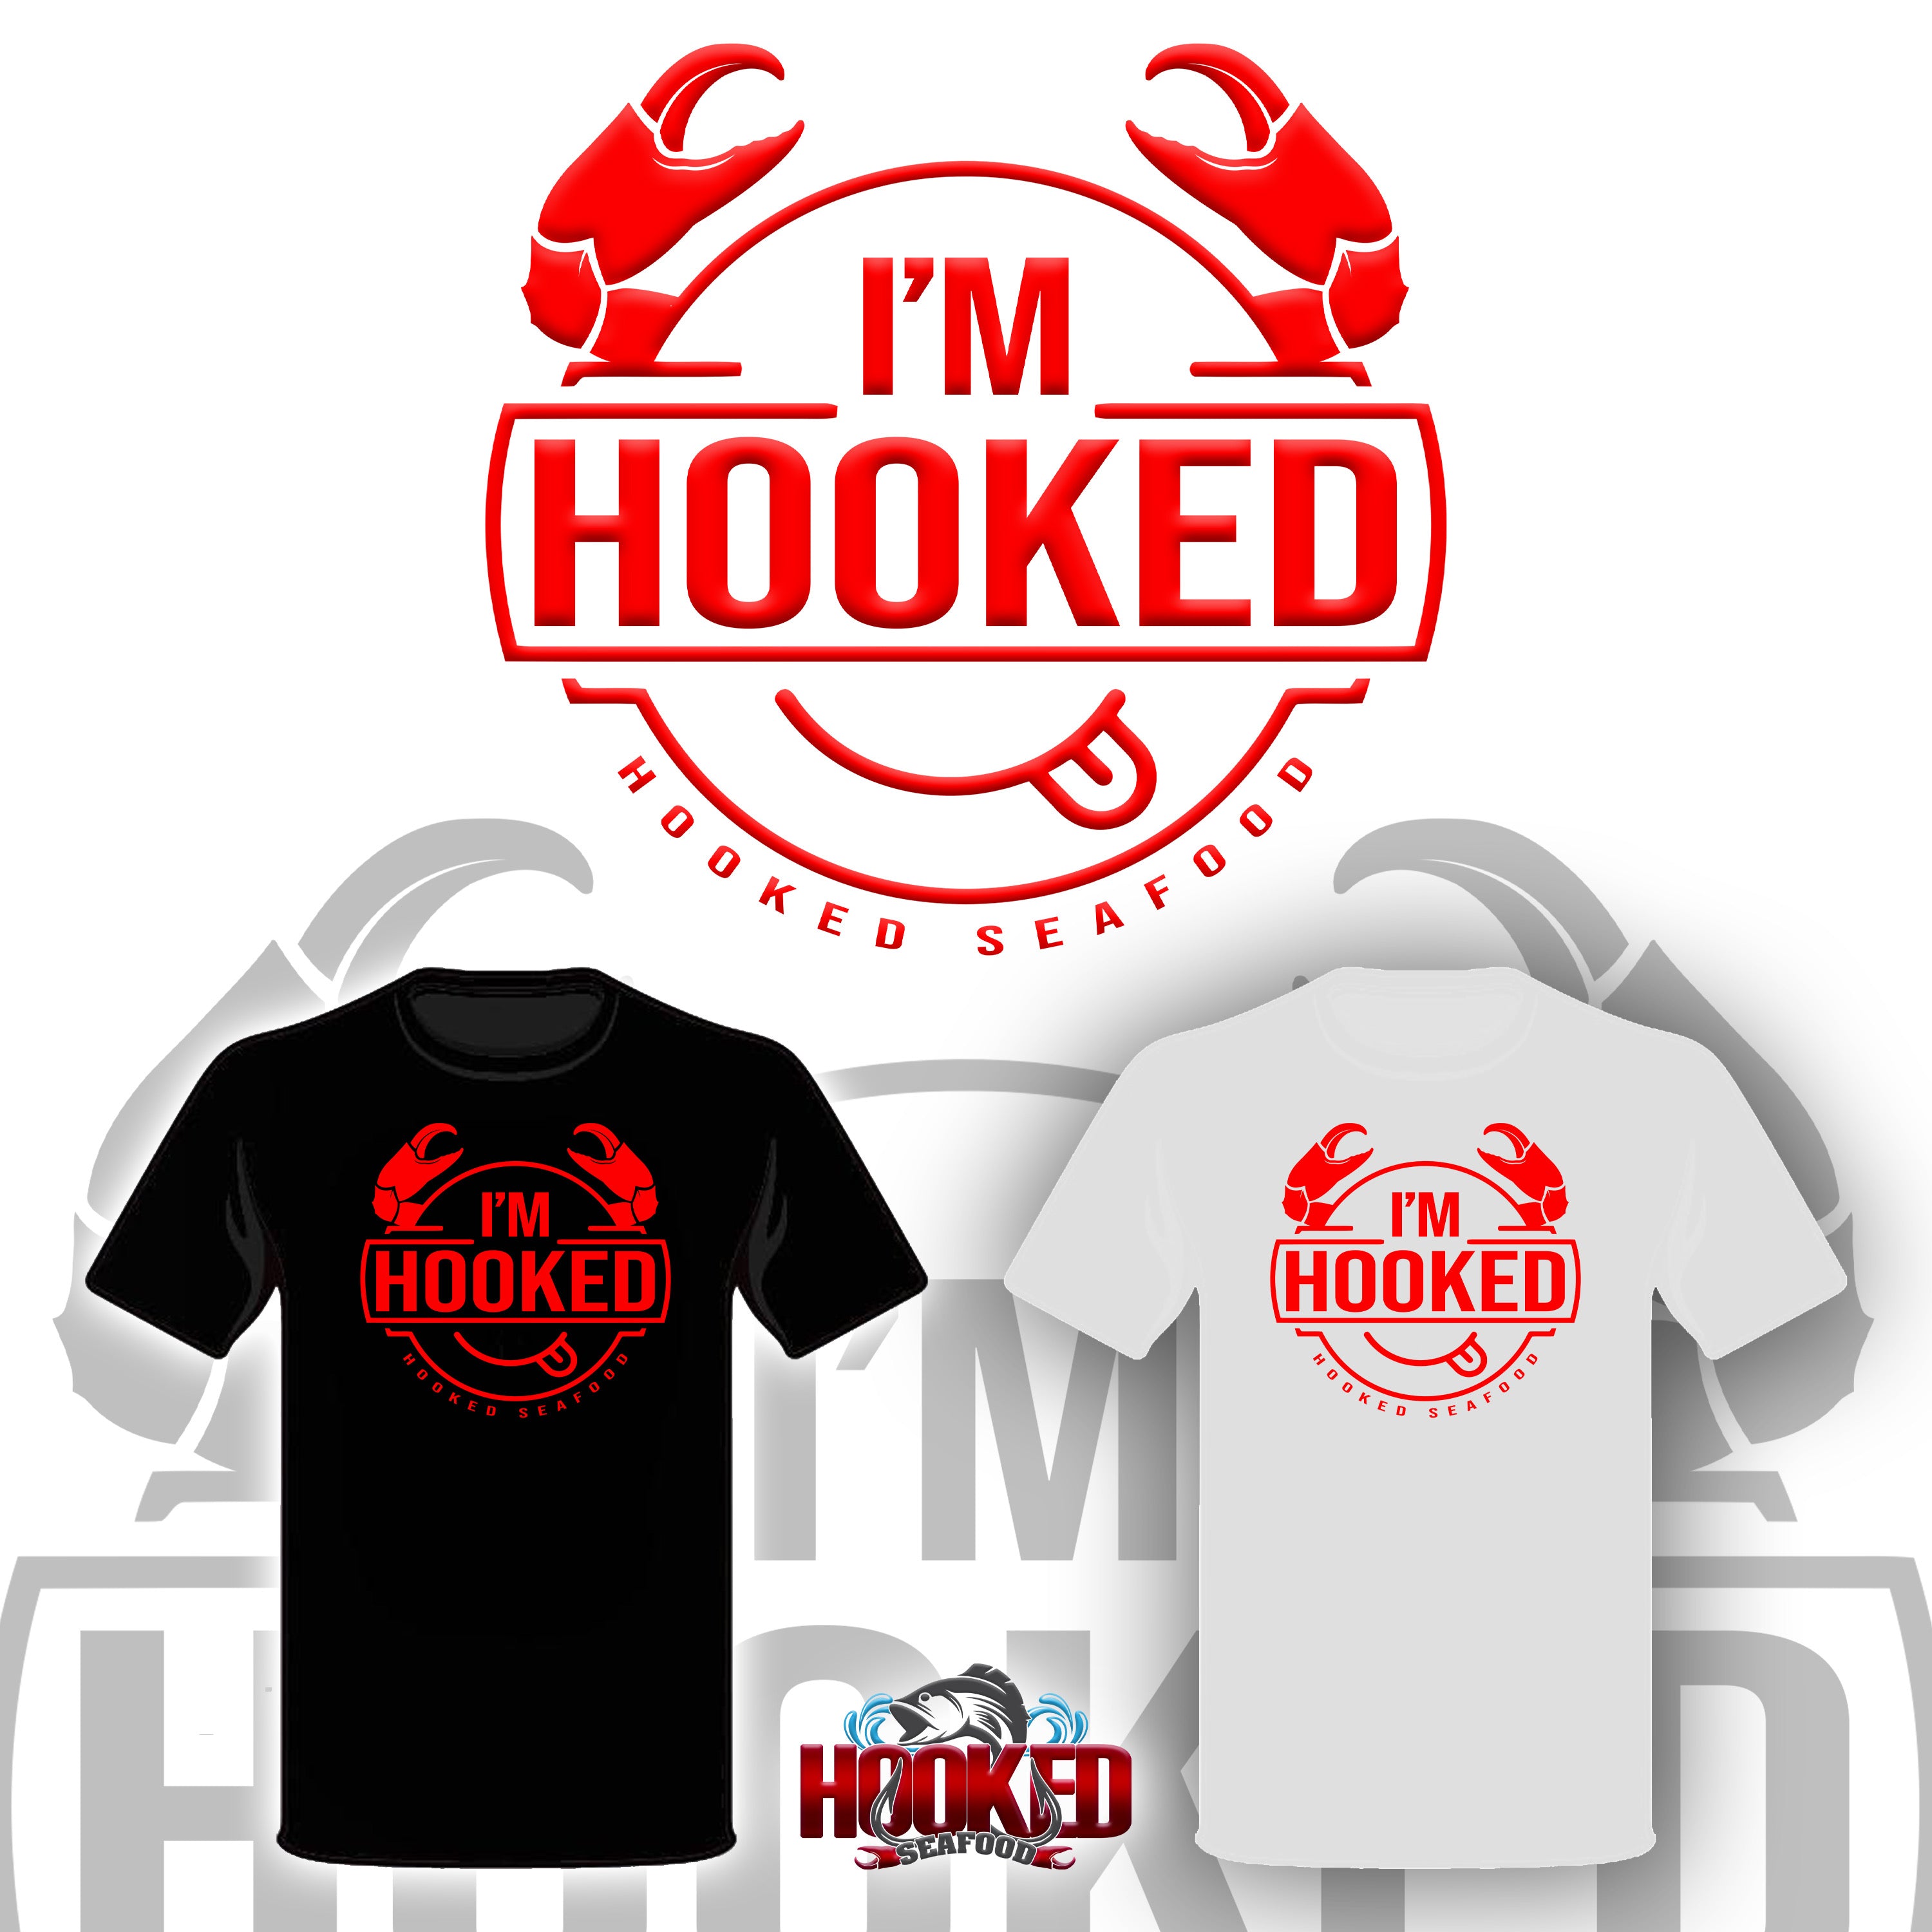 I’m hooked T-Shirts